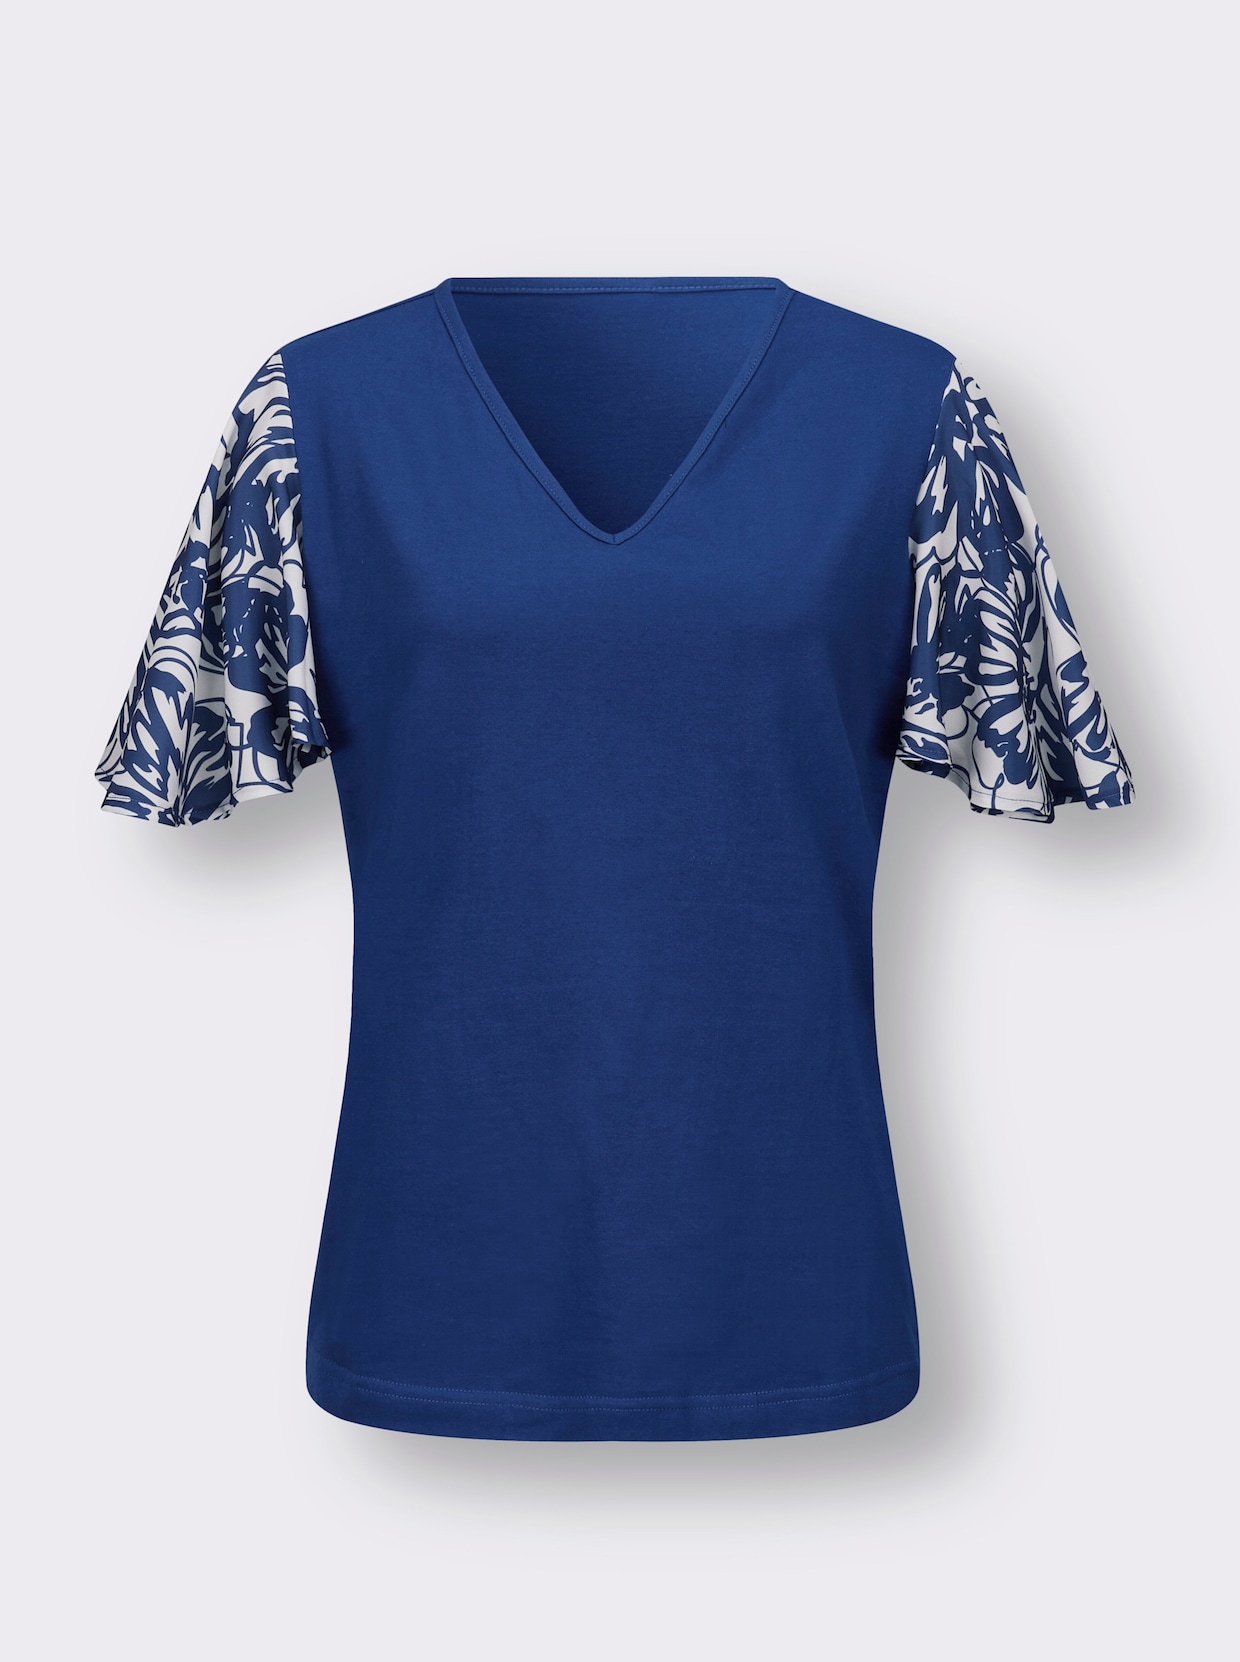 Tričko s krátkým rukávem - královská modrá